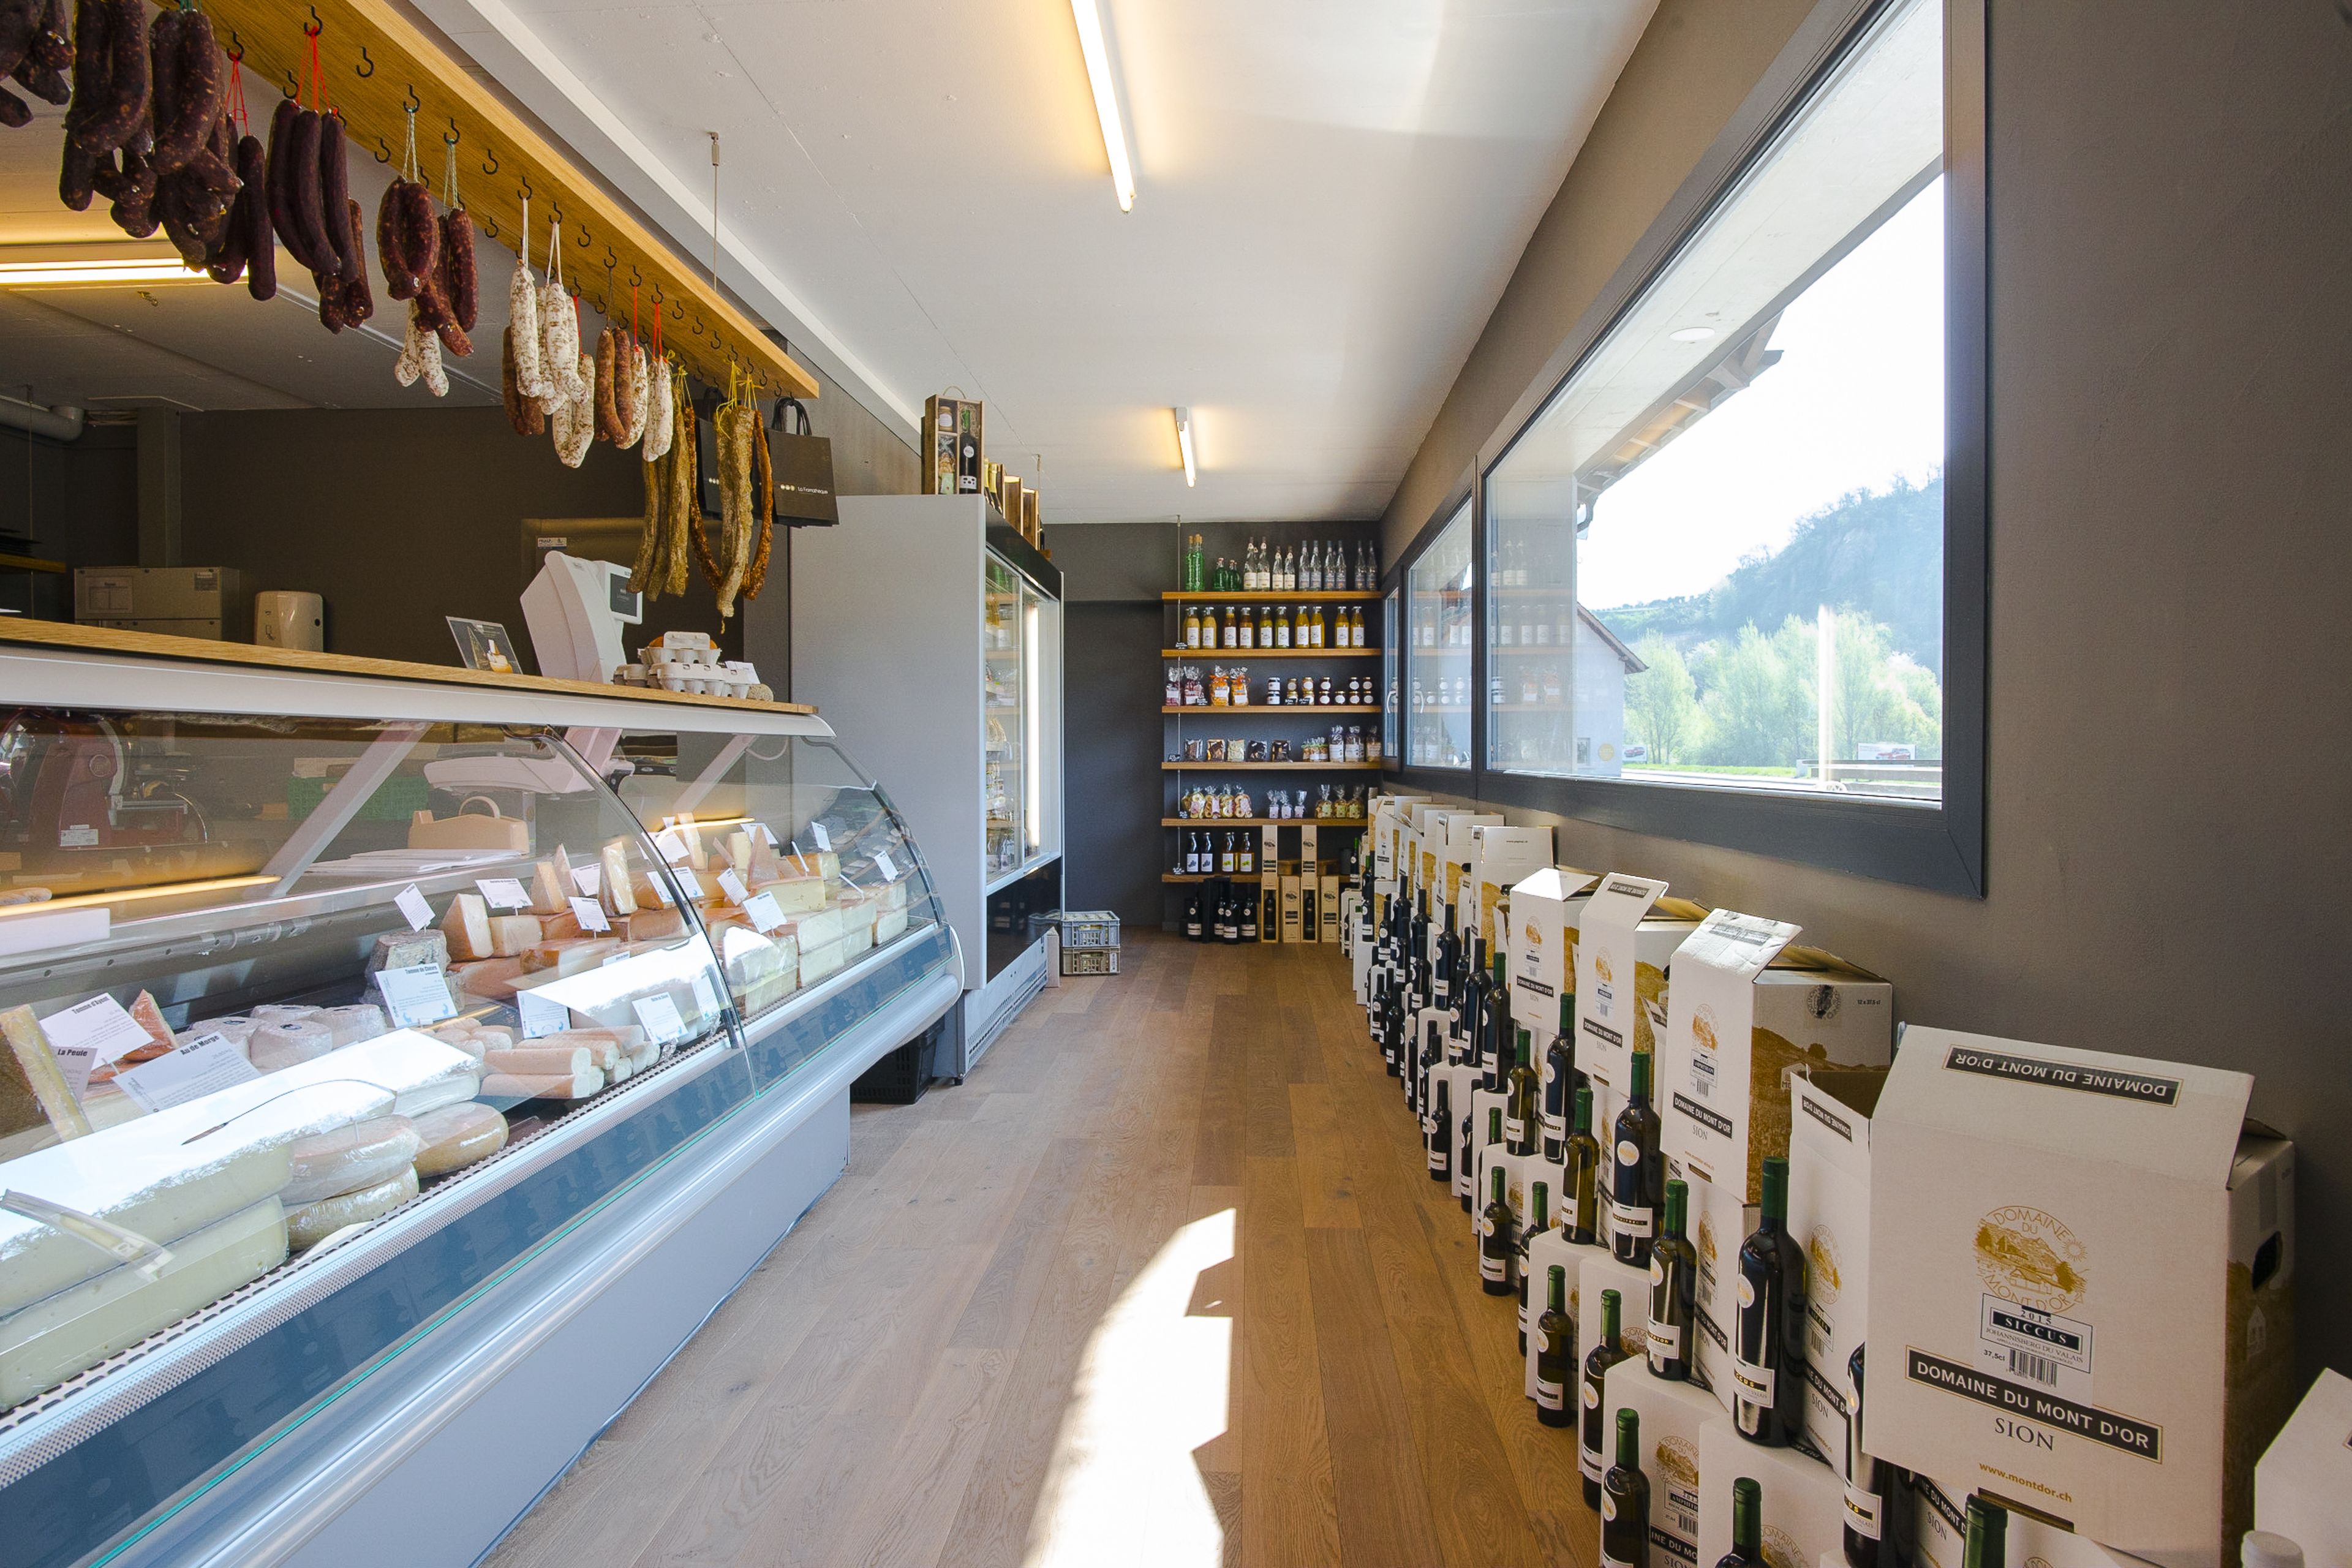 Point de vente Caveau Mont d'Or, Sion Valais Suisse